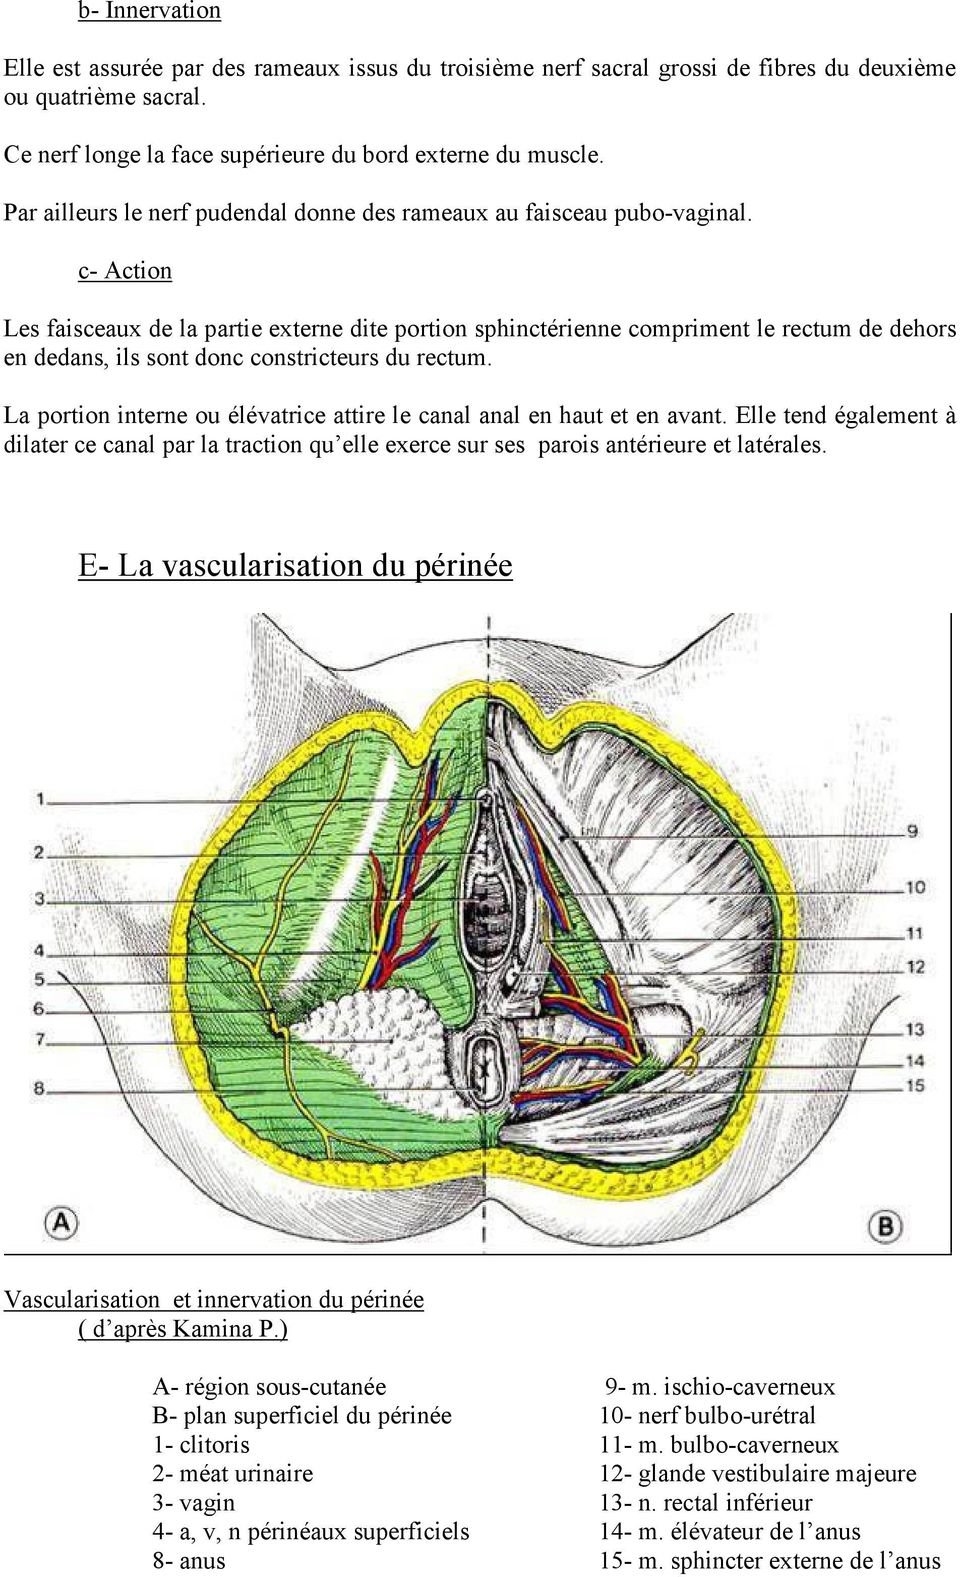 c- Action Les faisceaux de la partie externe dite portion sphinctérienne compriment le rectum de dehors en dedans, ils sont donc constricteurs du rectum.